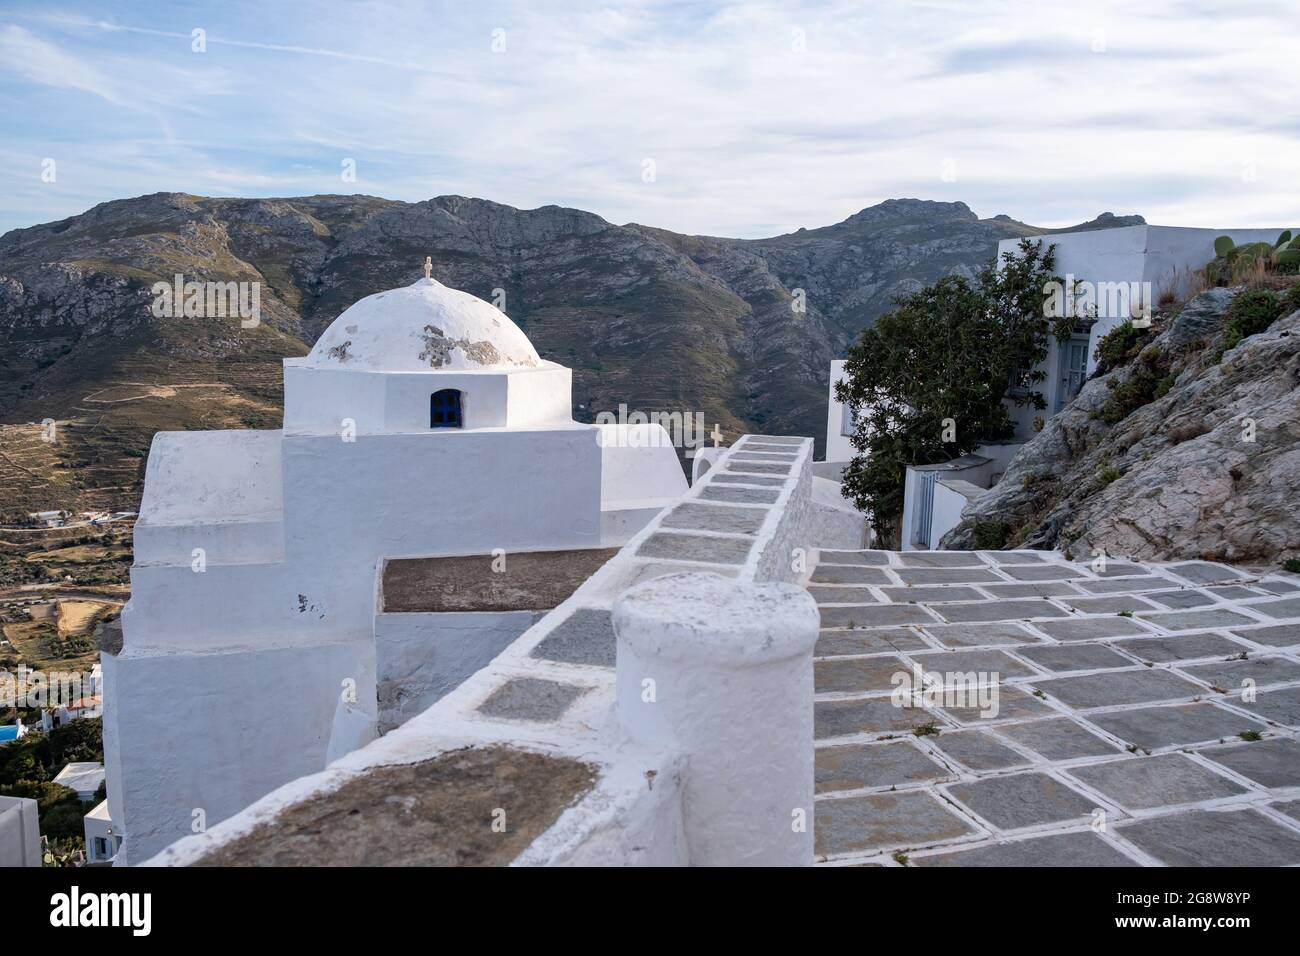 Kirche orthodoxe, kleine weiß getünchte alte Kapelle, kletterte auf felsigen Berg bei Serifos Insel, Kykladen Griechenland. Religiöse Destination Urlaub Sommer Stockfoto